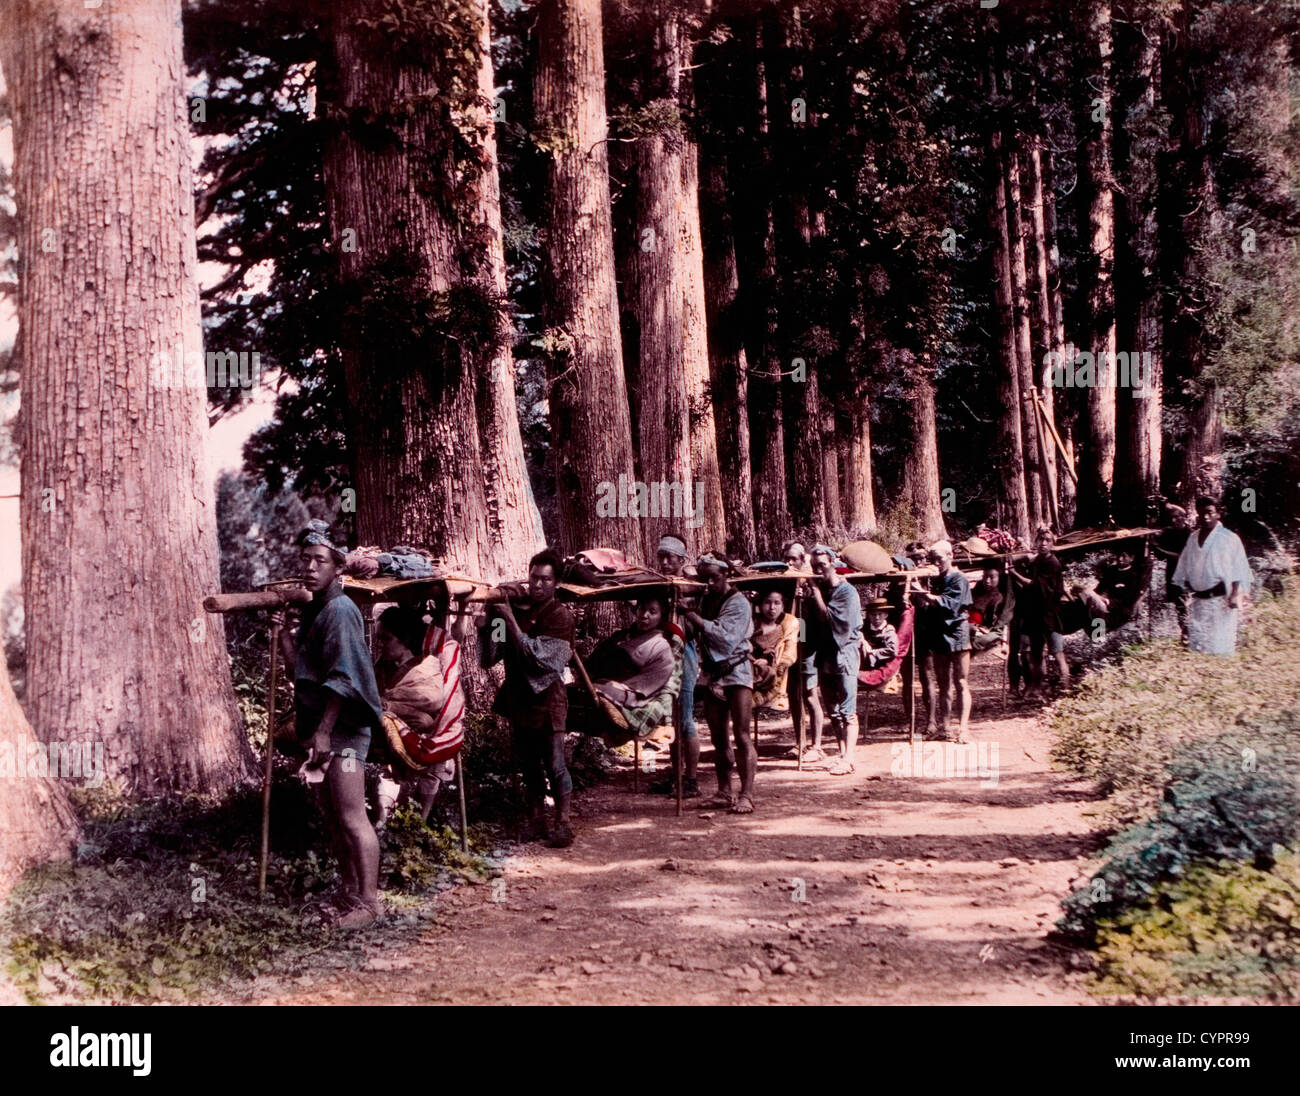 Giapponese che porta gli uomini le donne giapponesi in sedie in viaggio lungo la strada rurale, Kusakabe Kimbei, Hand-Colored fotografia, circa 1870 Foto Stock